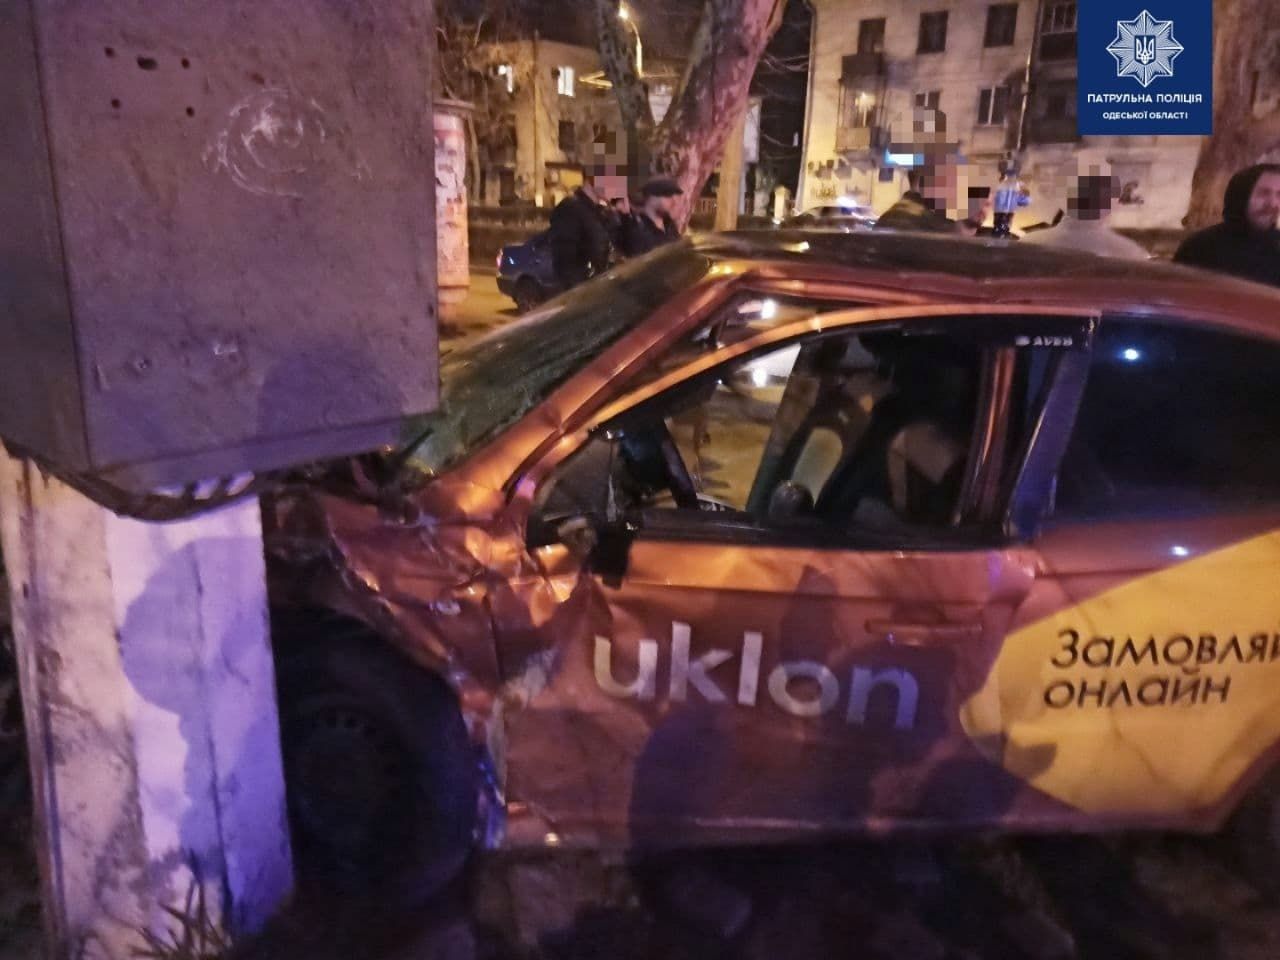 Авария 4 апреля 2021 такси Uklon в Одессе: детали происшествия - фото